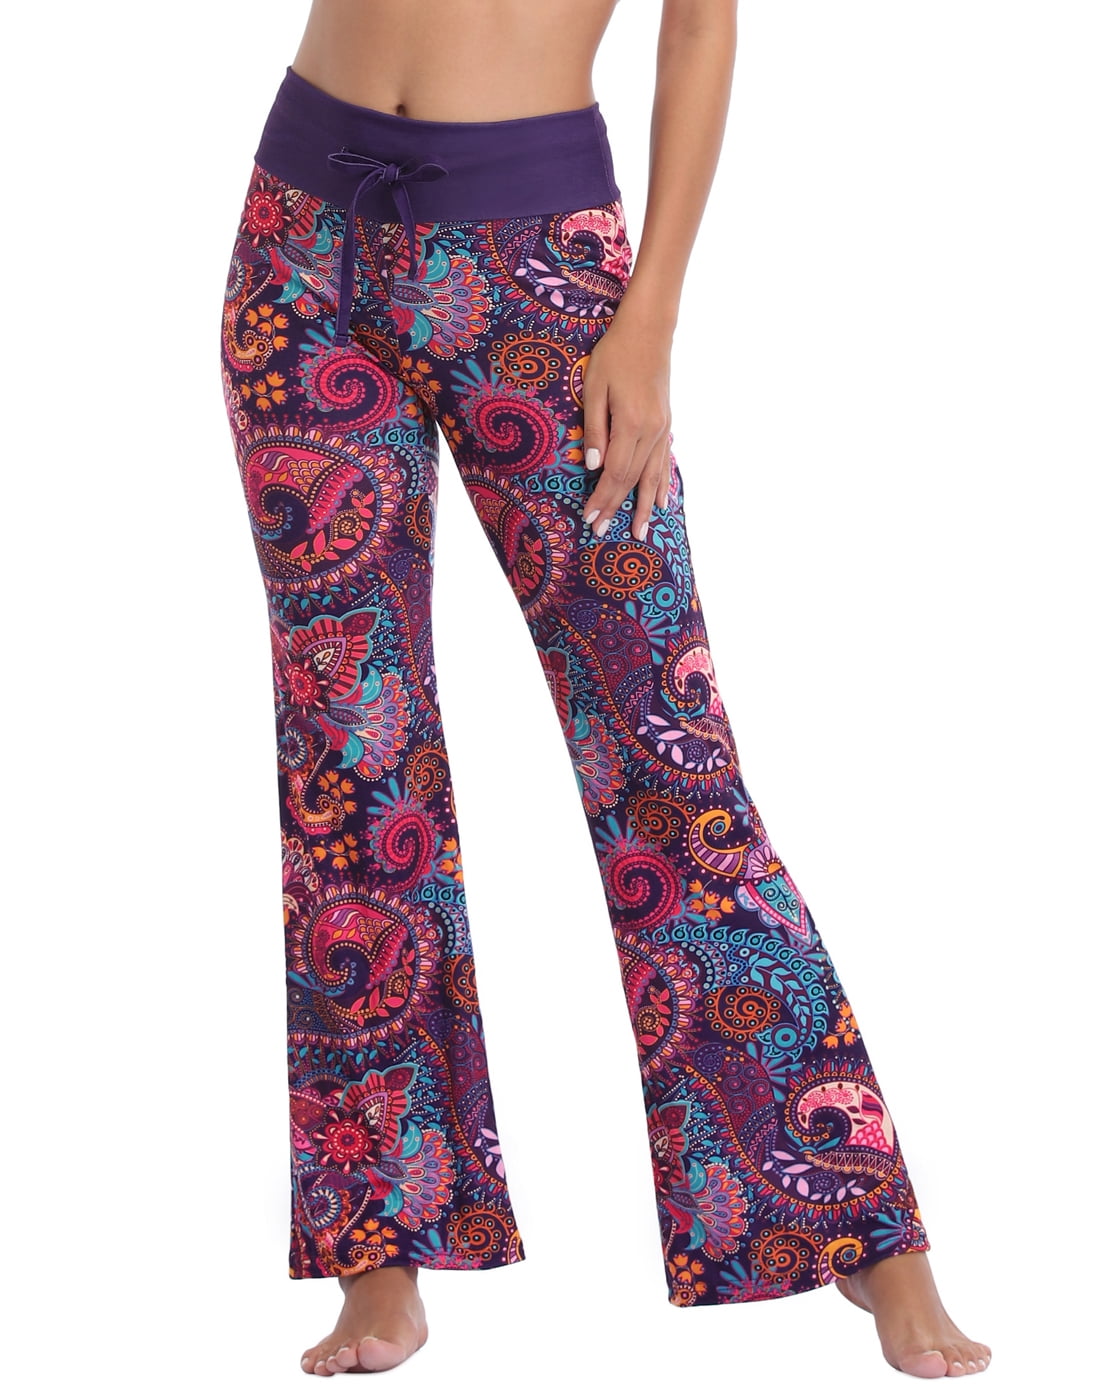 HDE Women and Women's Plus Pajama Pants Sleepwear PJ Bottoms (Purple ...